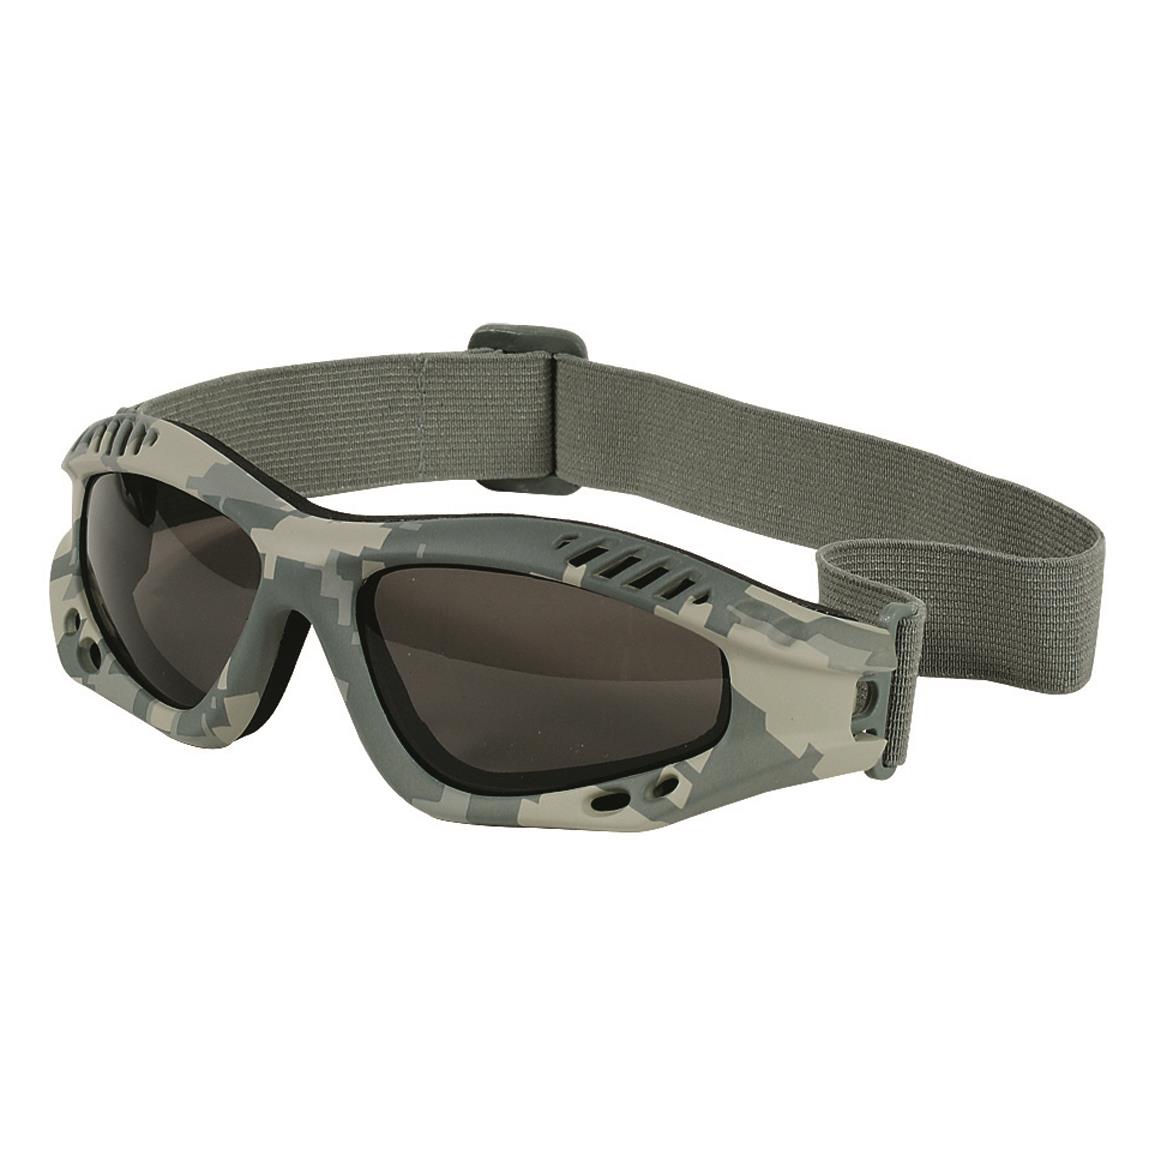 Voodoo Tactical Sportac Goggle Glasses, ACU